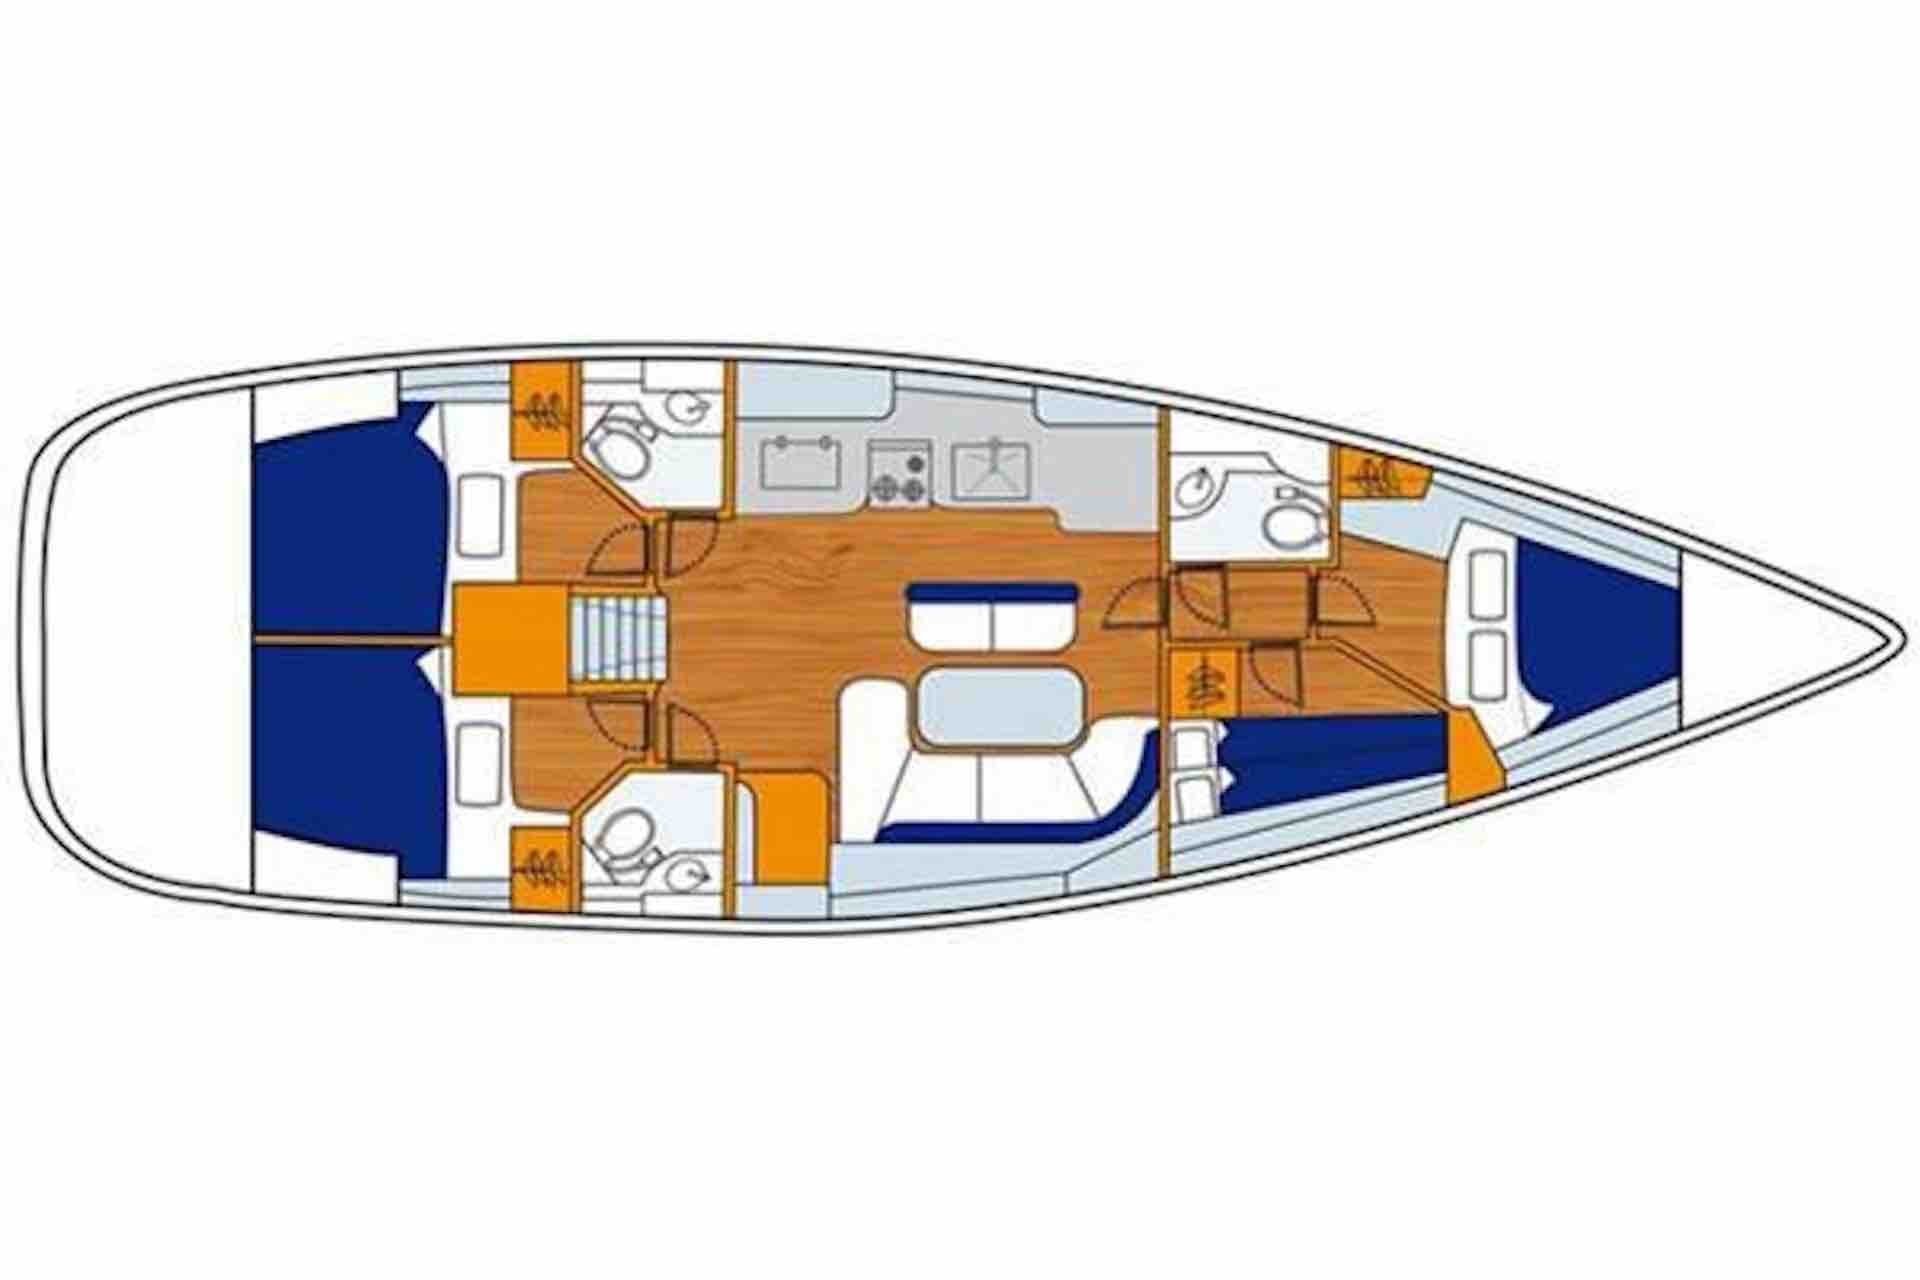 San Blas sailing charter sailboat layout